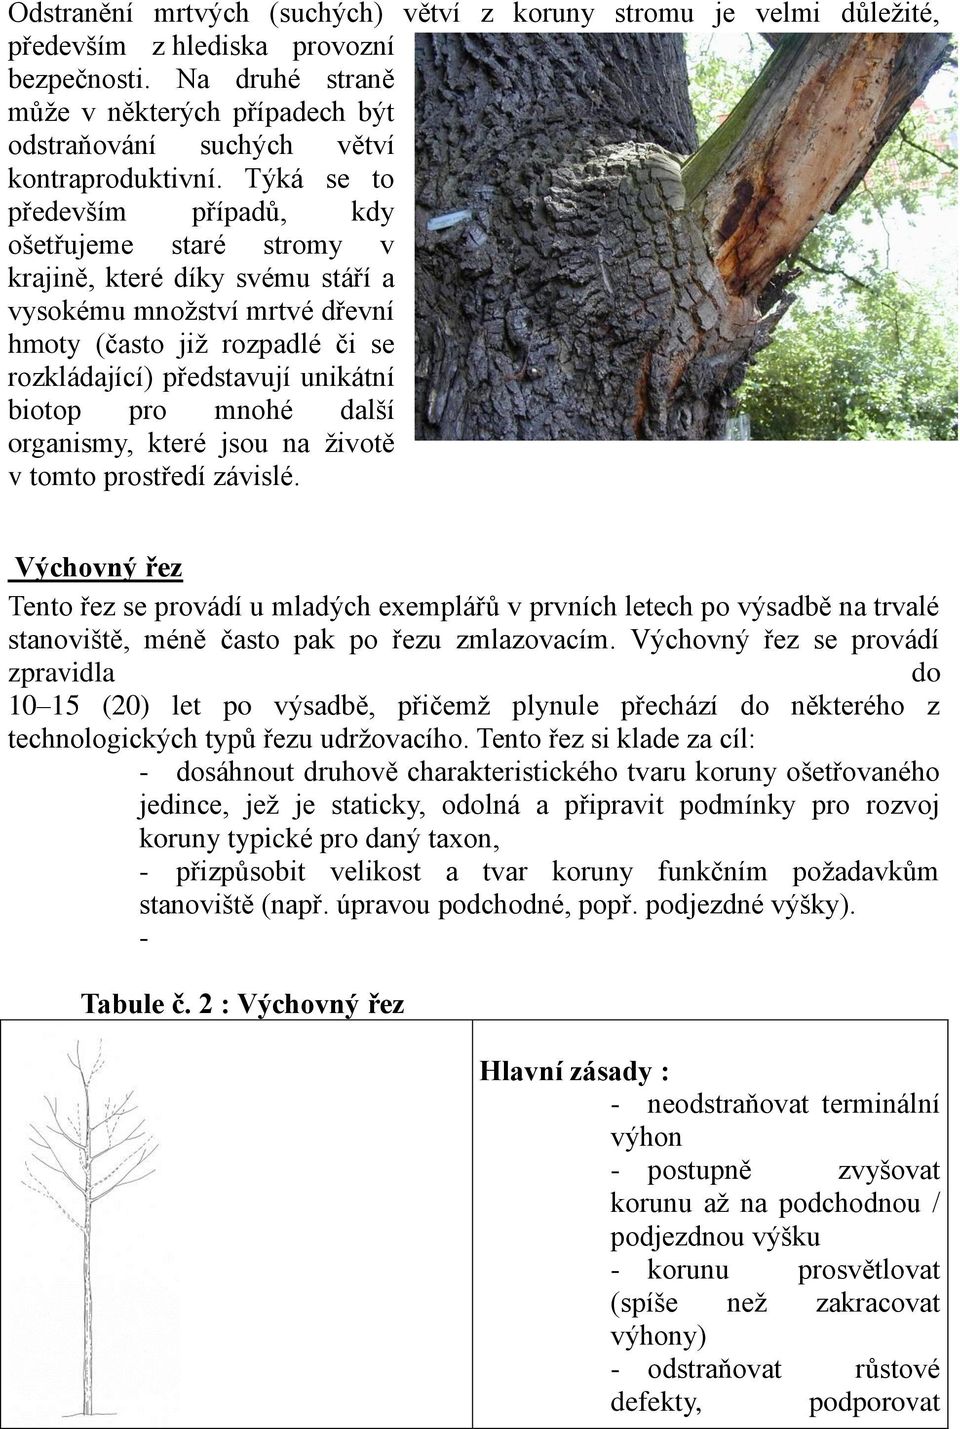 Týká se to především případů, kdy ošetřujeme staré stromy v krajině, které díky svému stáří a vysokému množství mrtvé dřevní hmoty (často již rozpadlé či se rozkládající) představují unikátní biotop